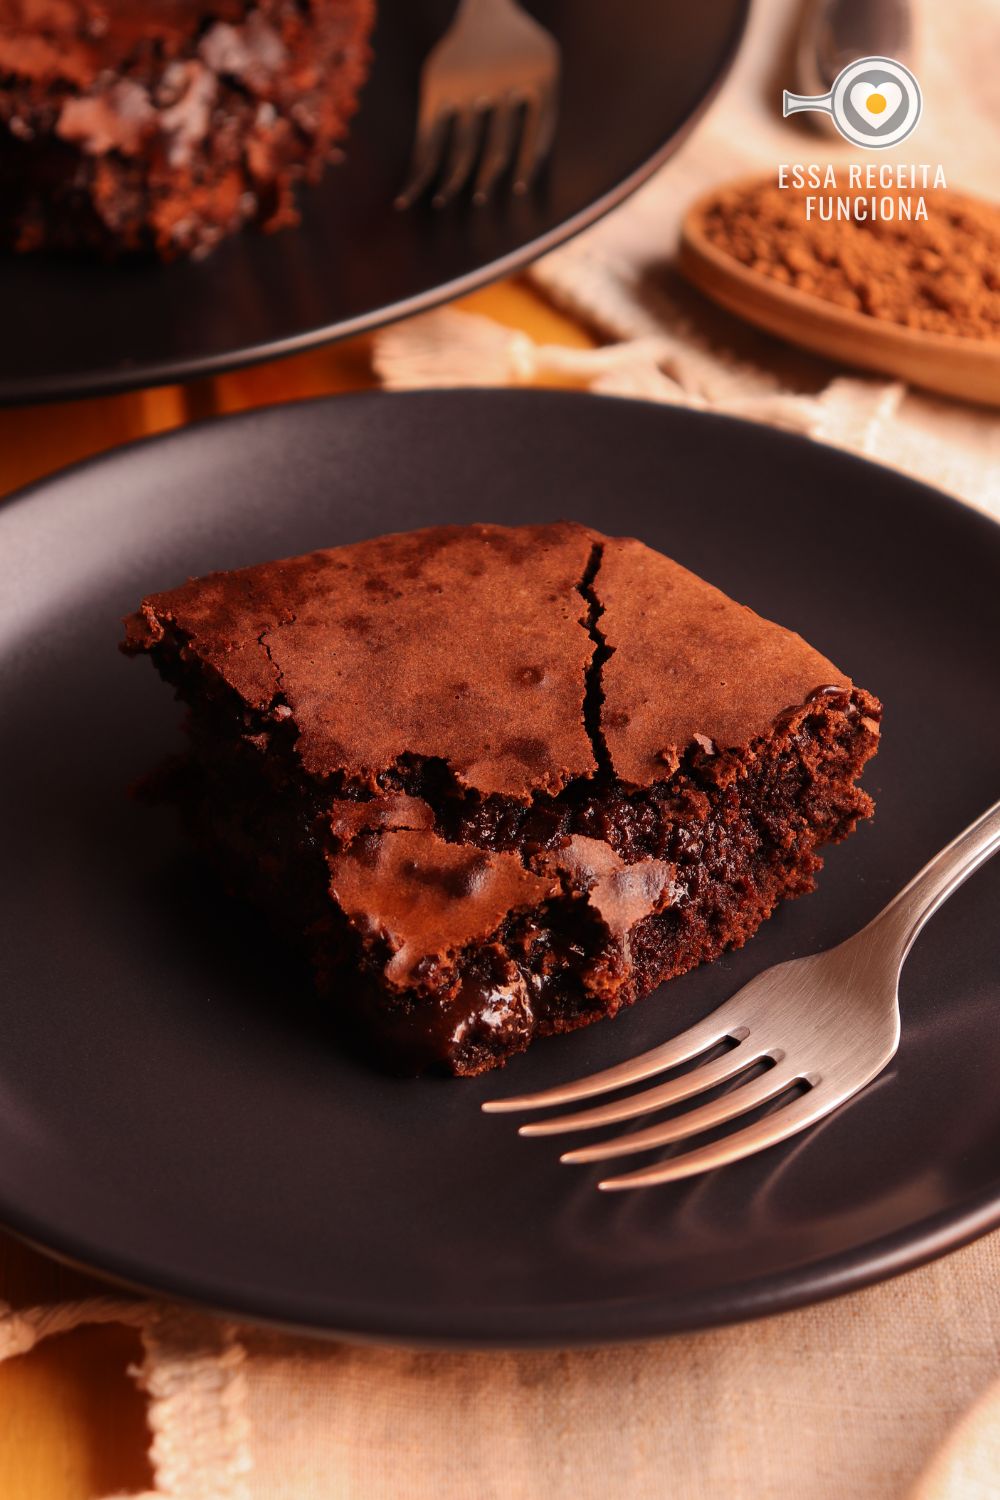 Brownie De Chocolate Para Duas Pessoas Essa Receita Funciona